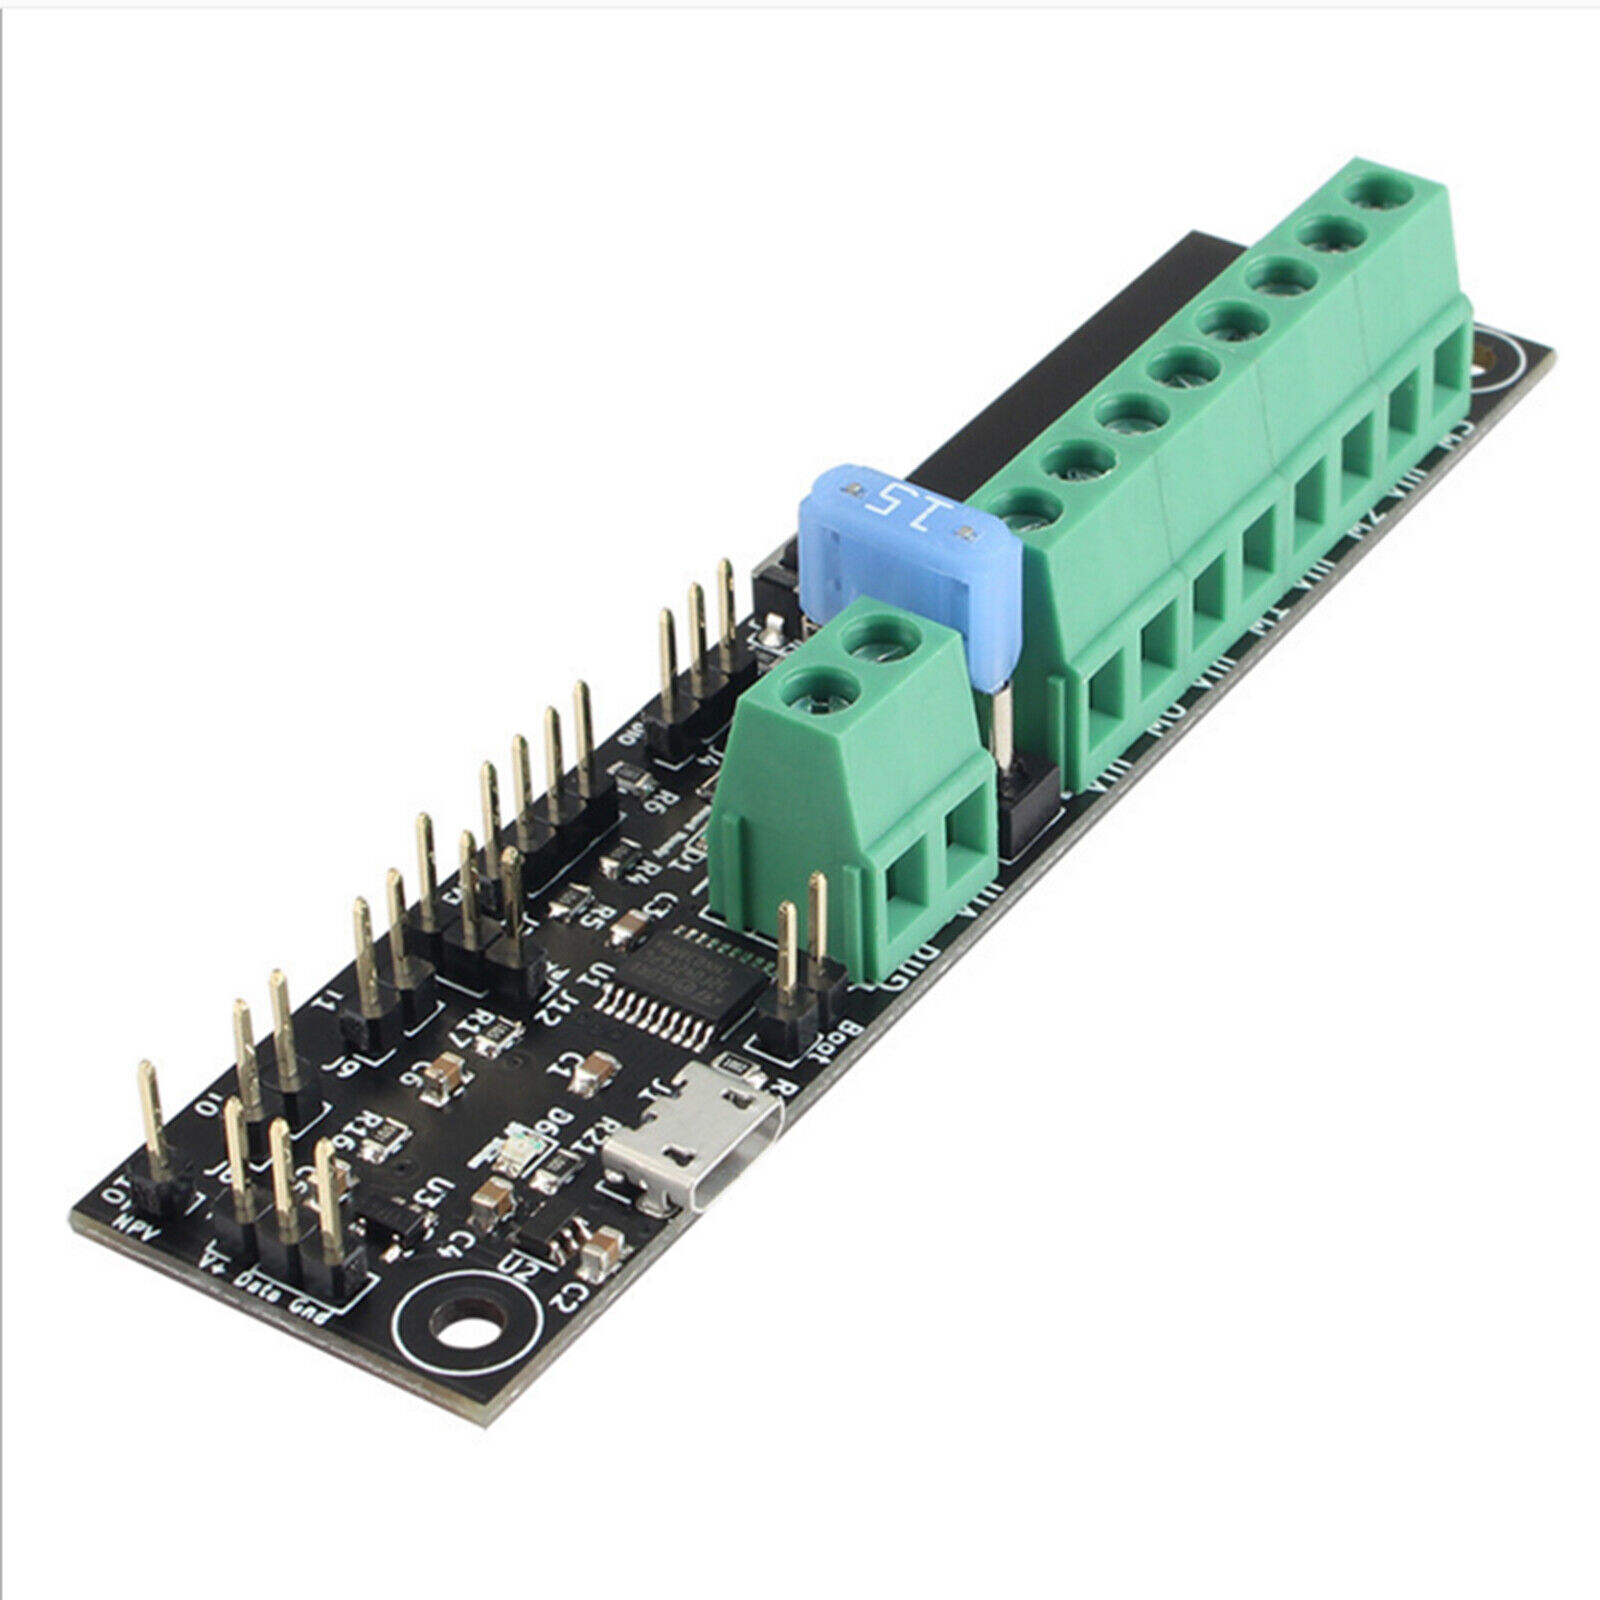  3D Printer Accessories For Voron V2.4 Klipper Expander Board Expansion Board 